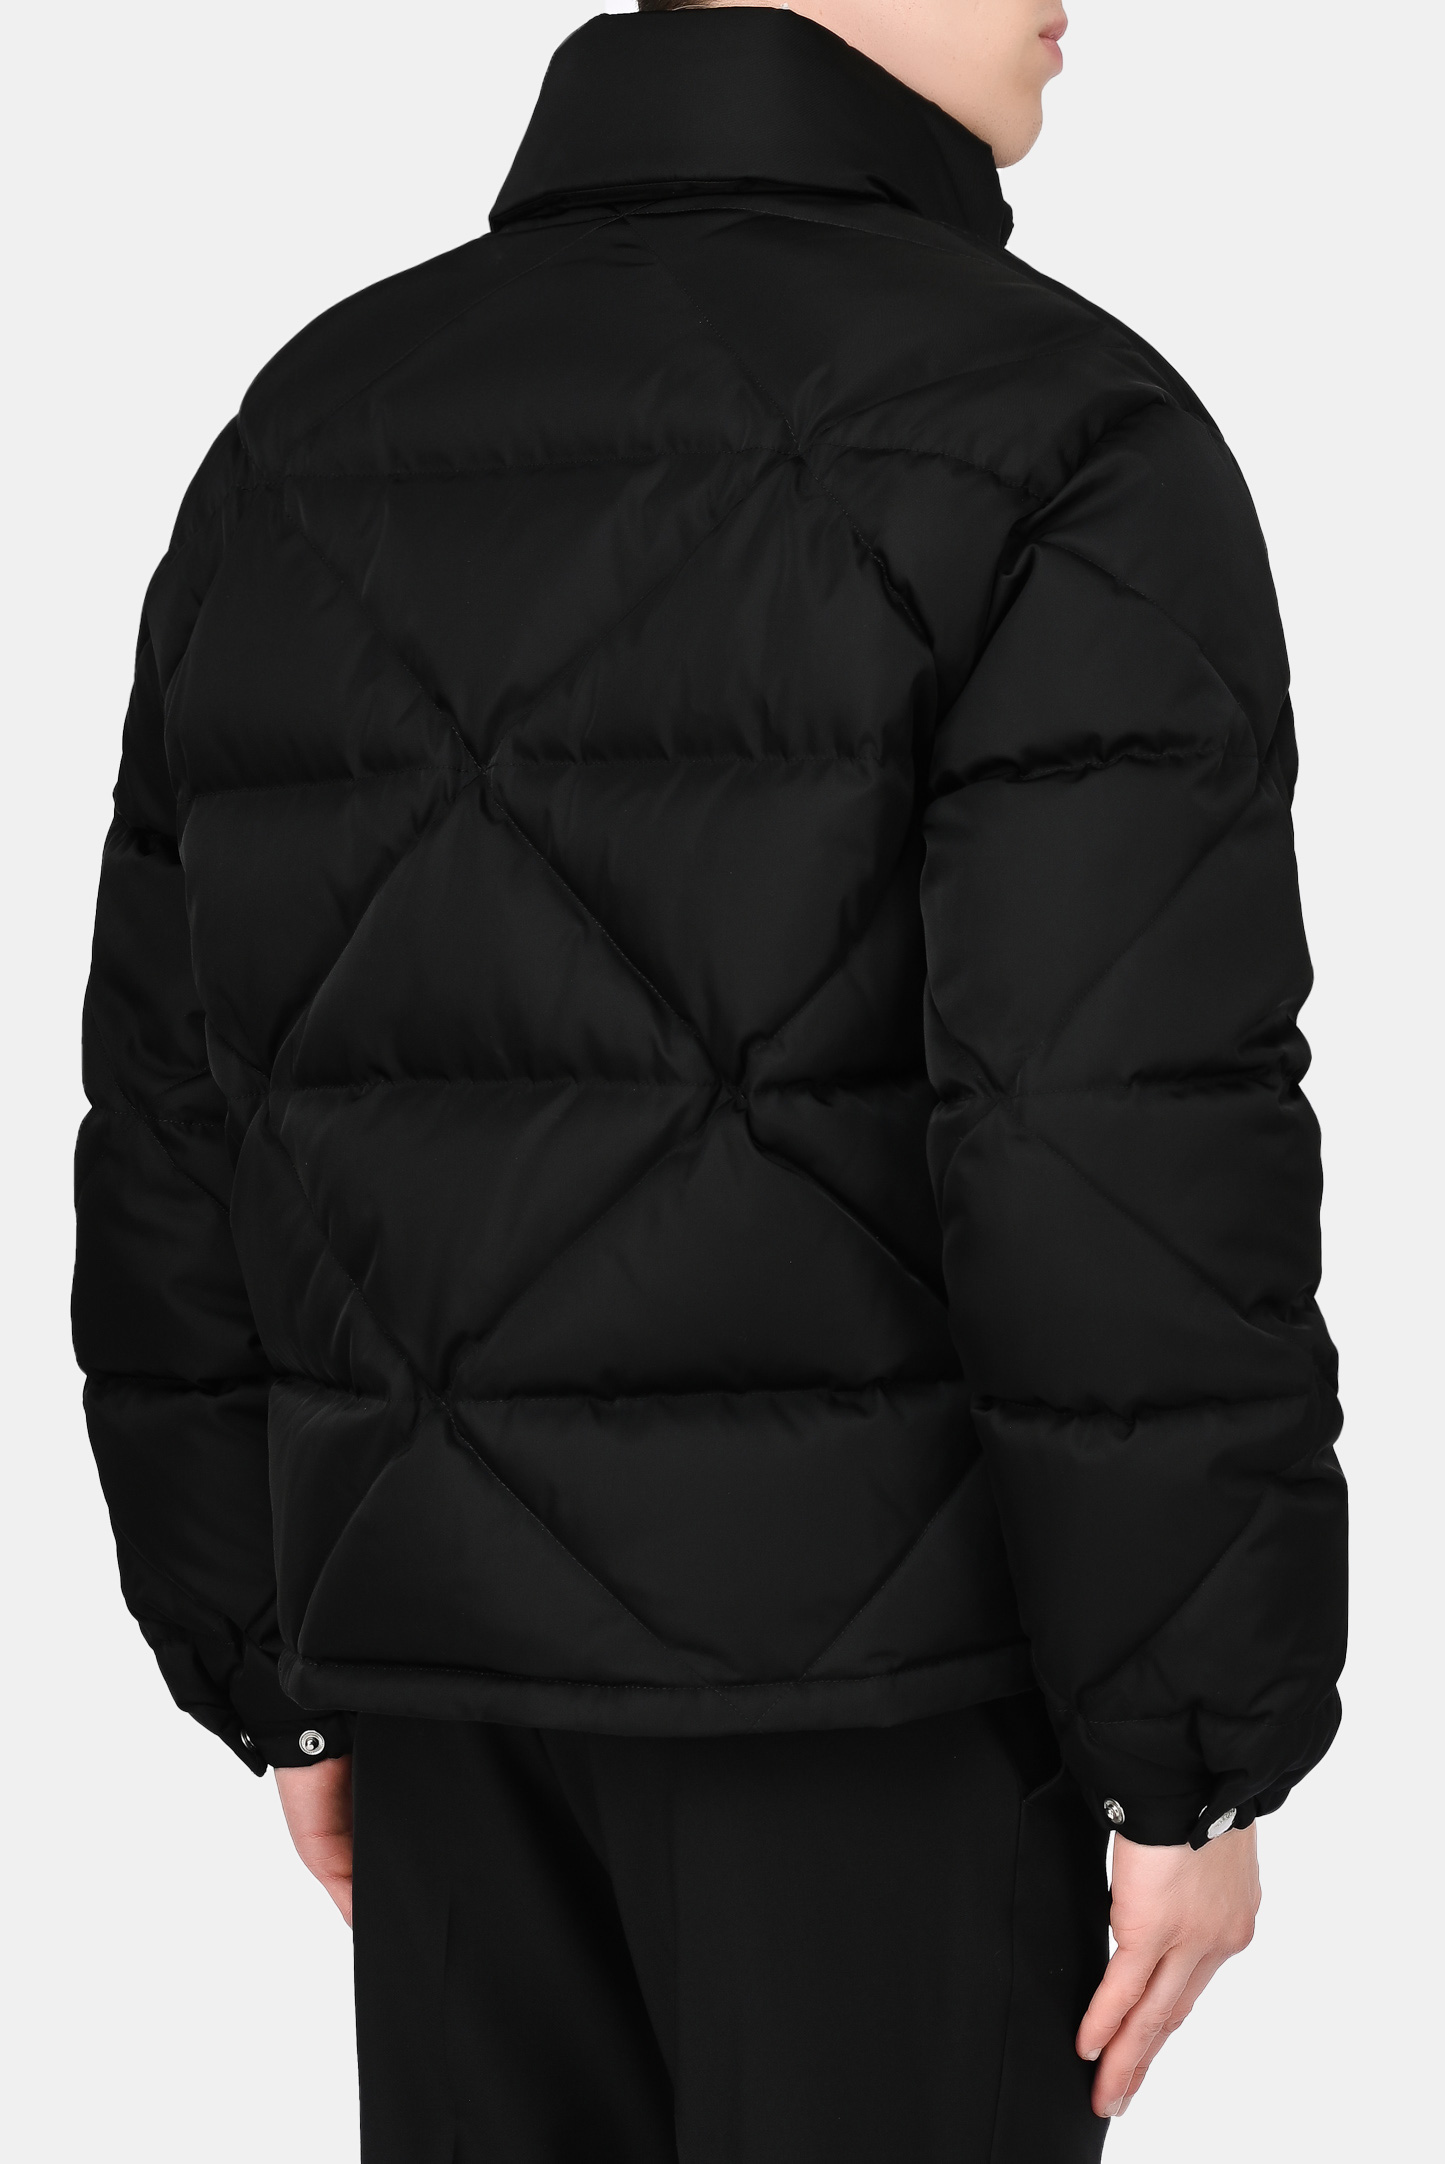 Куртка PRADA SGB803 S 202, цвет: Черный, Мужской